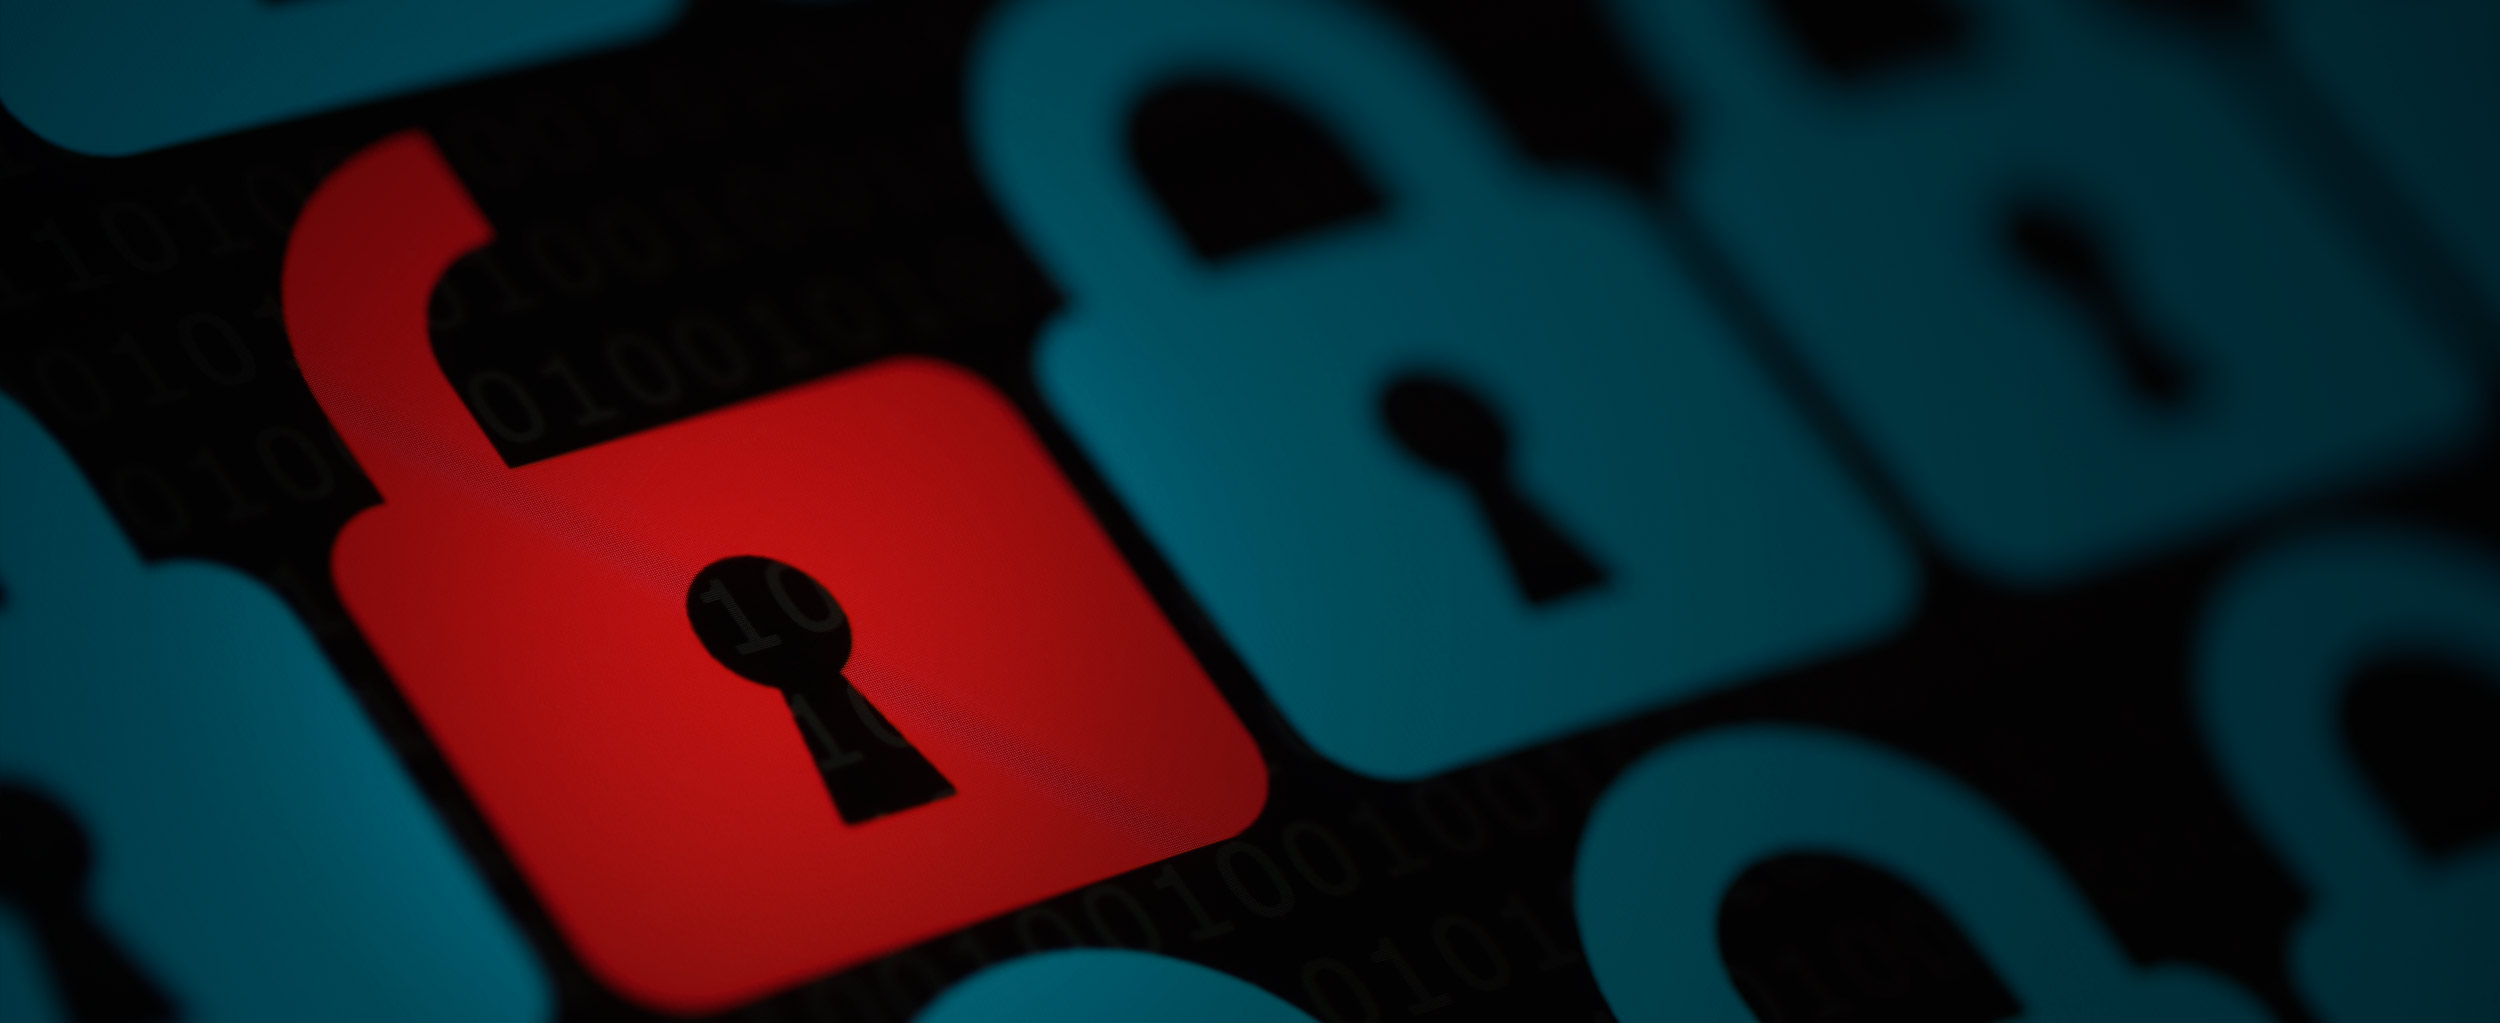 Nach Hack auf Citrix: Ist kein Unternehmen mehr sicher?